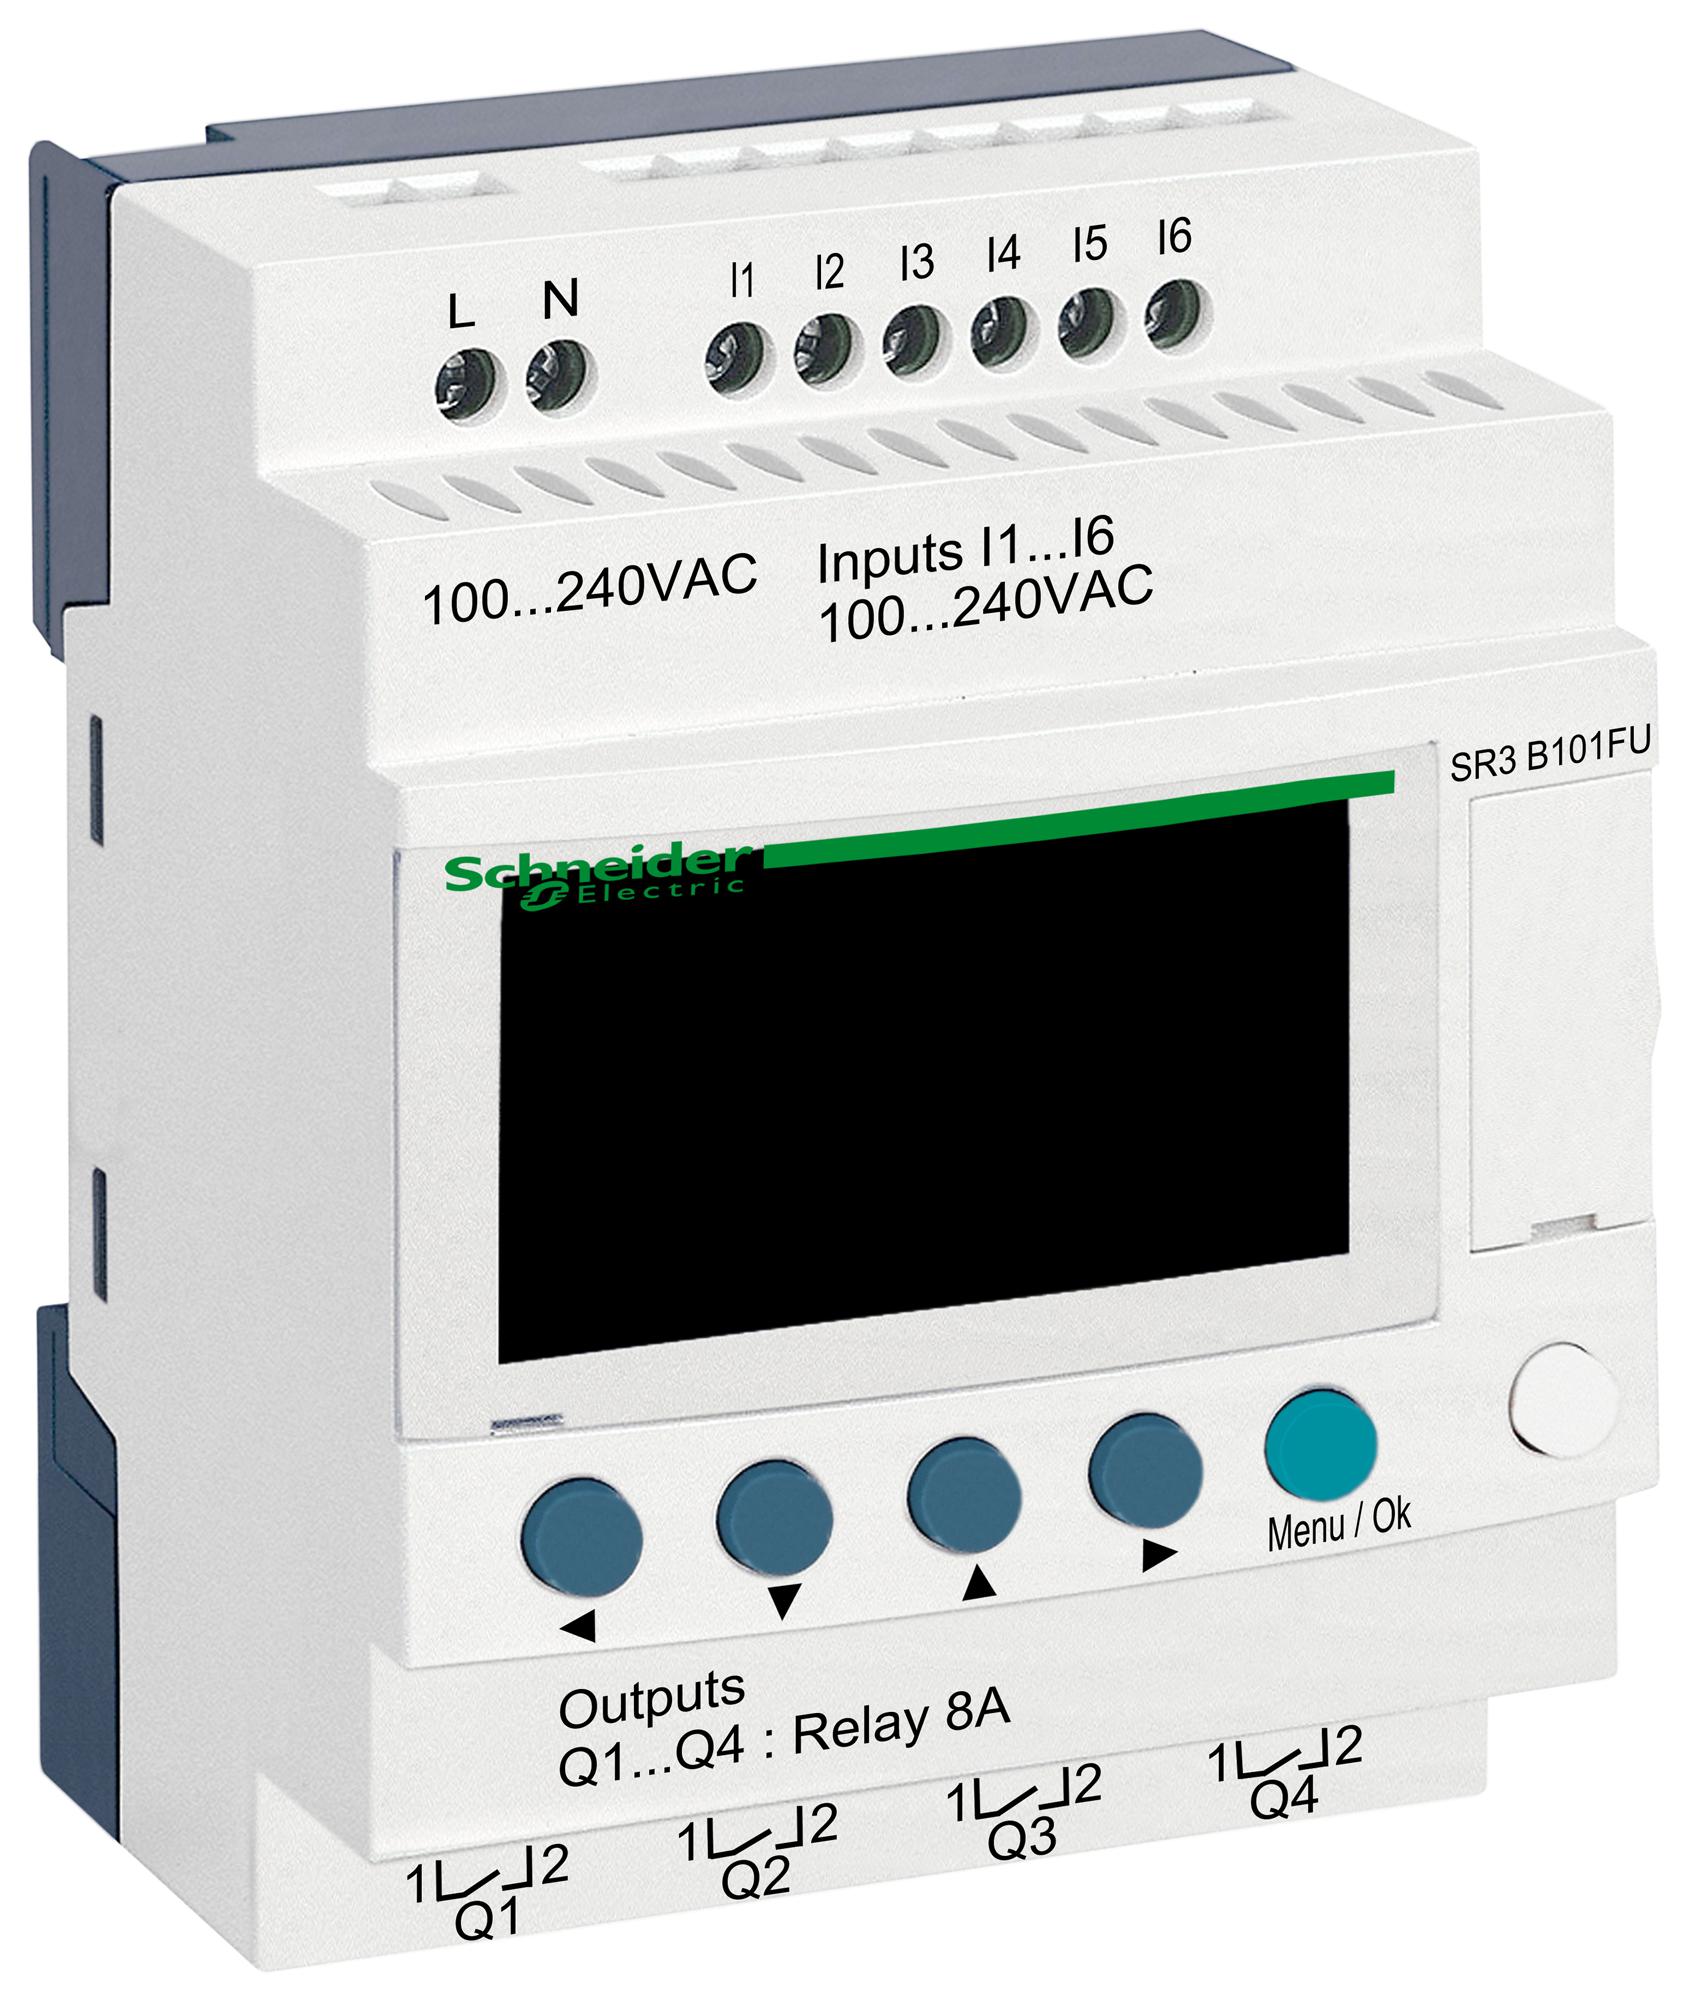 SR3B101FU COMPACT SMART RELAY, 6I/P, 4O/P DIGITAL SCHNEIDER ELECTRIC